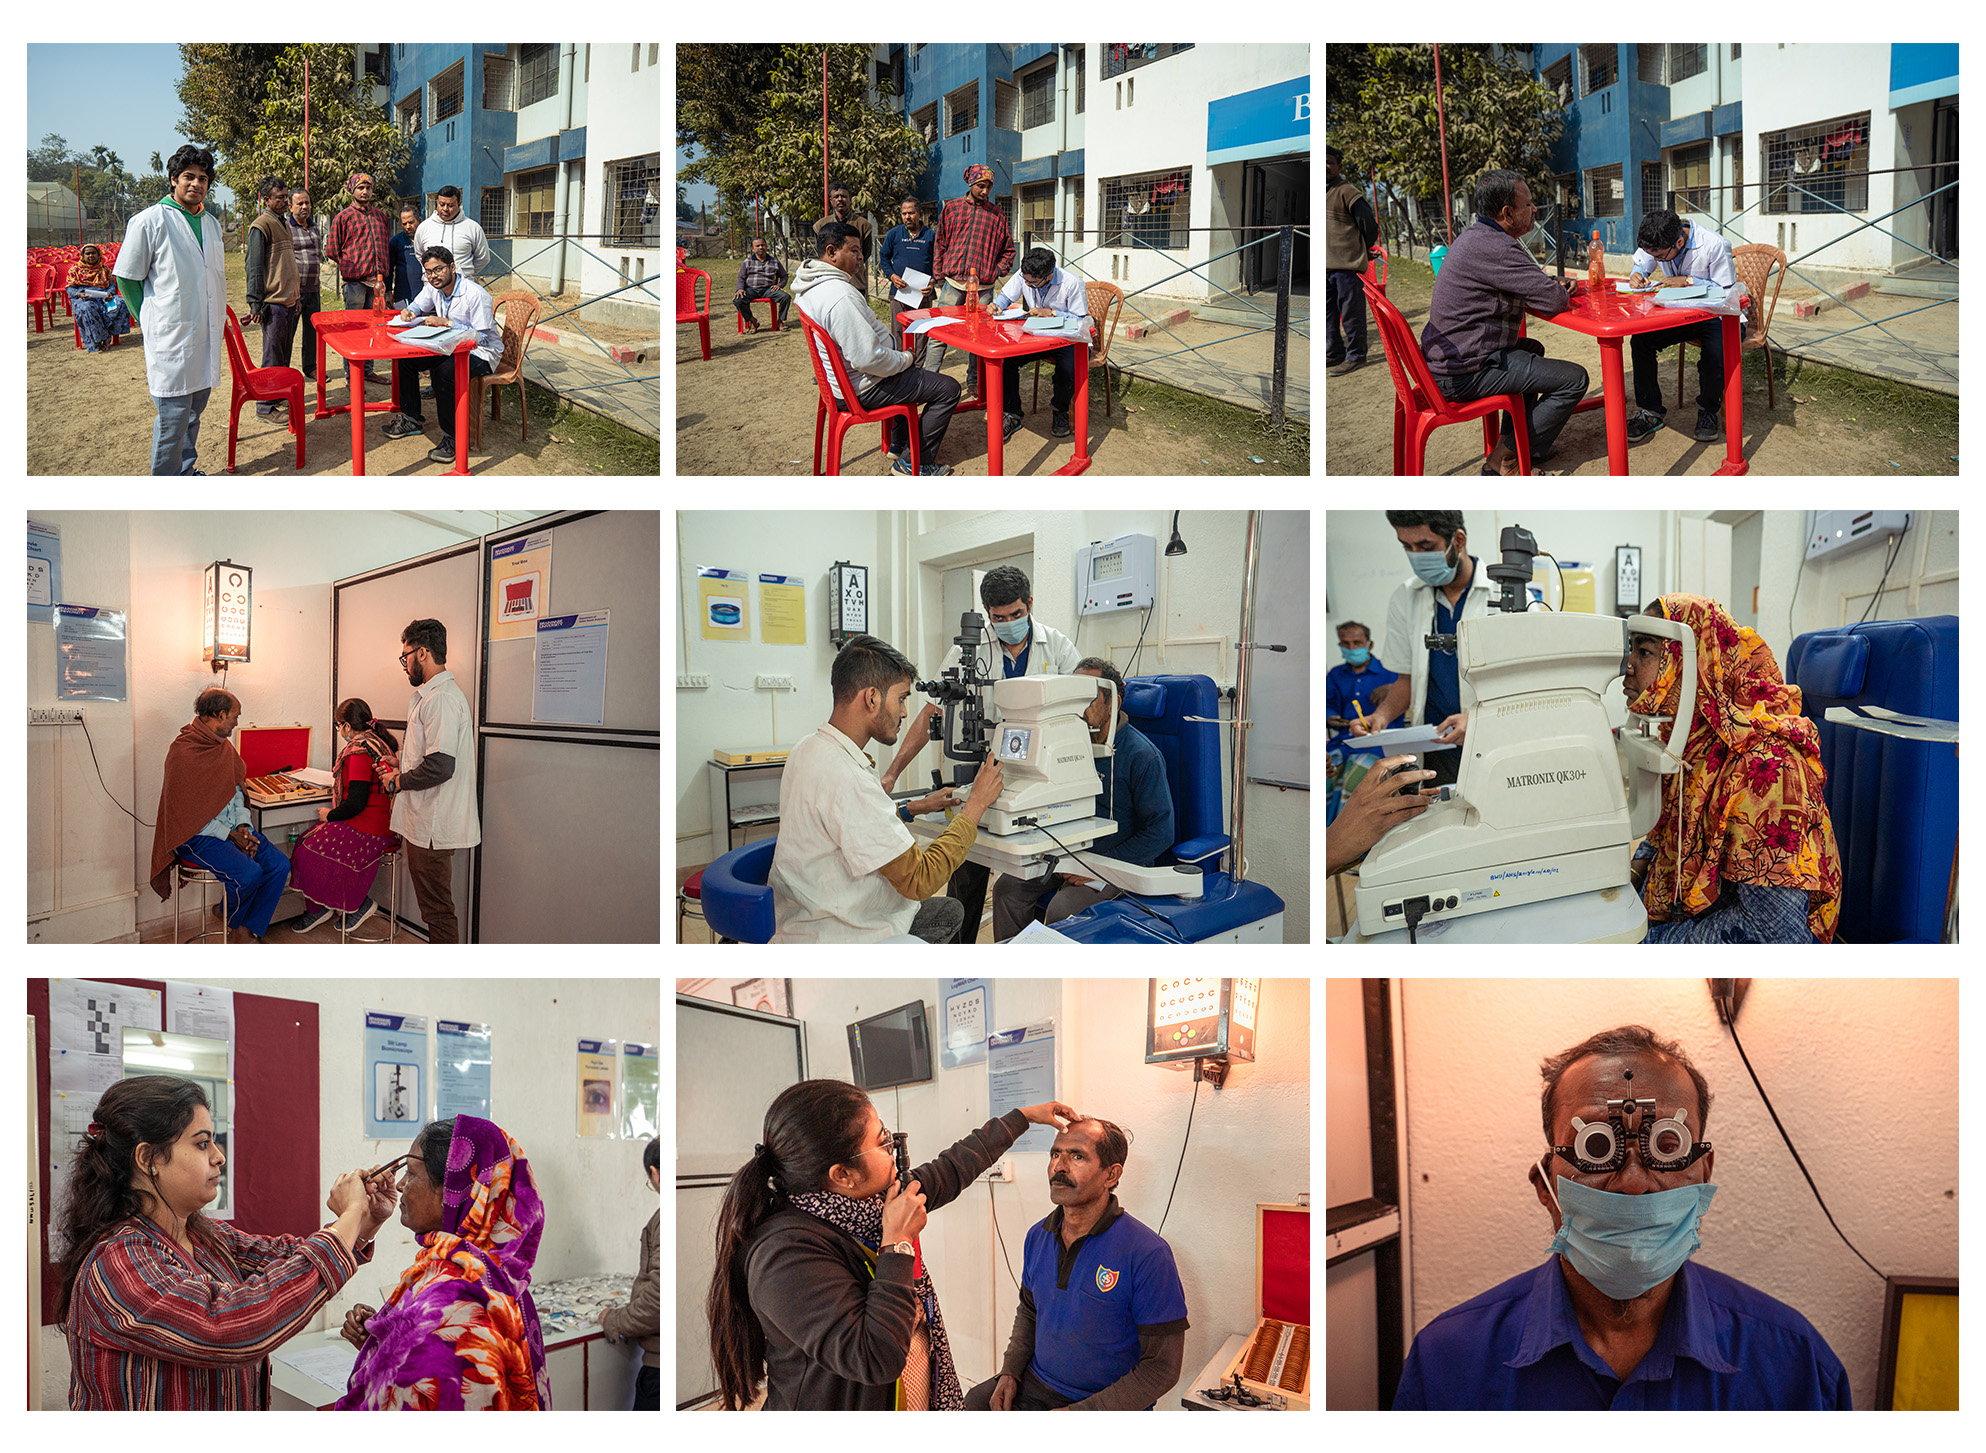 Vision and cataract screening camp